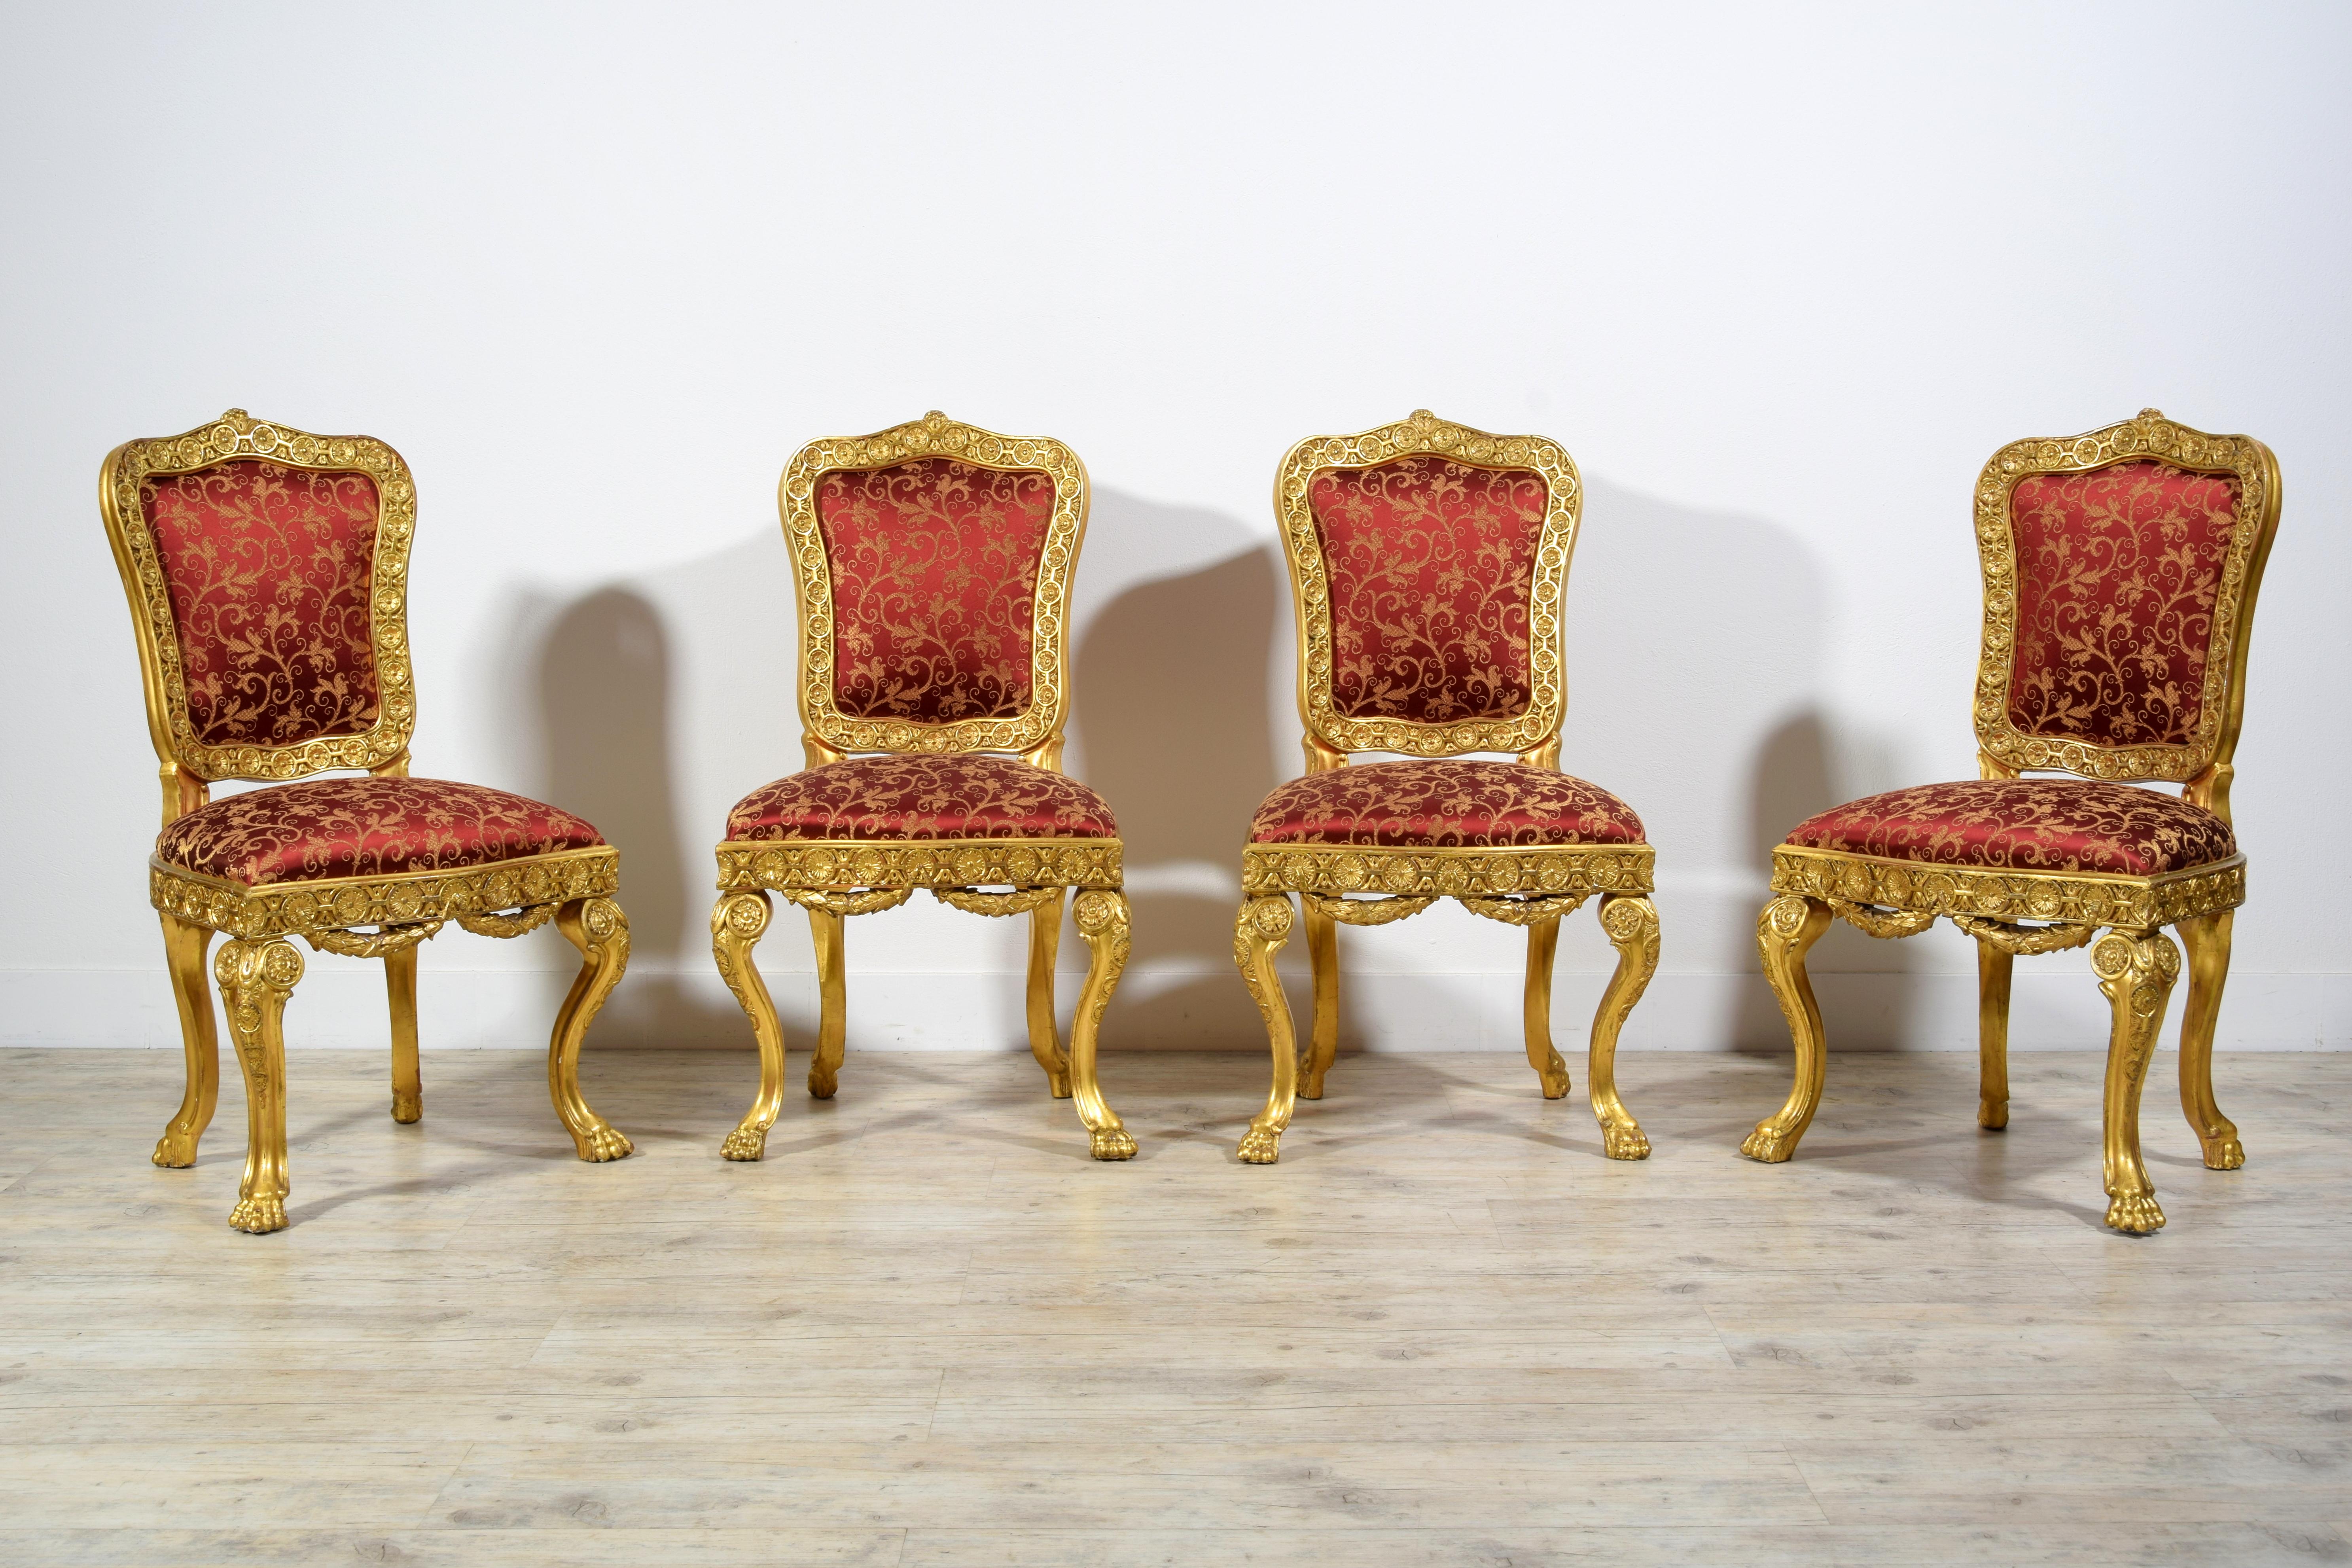 Quatre chaises baroques italiennes en bois doré sculpté du XVIIIe siècle 

Les quatre chaises ont été fabriquées à Rome (Italie) vers le milieu du XVIIIe siècle, à l'époque baroque.
La structure en bois sculpté et doré comporte des sculptures avec